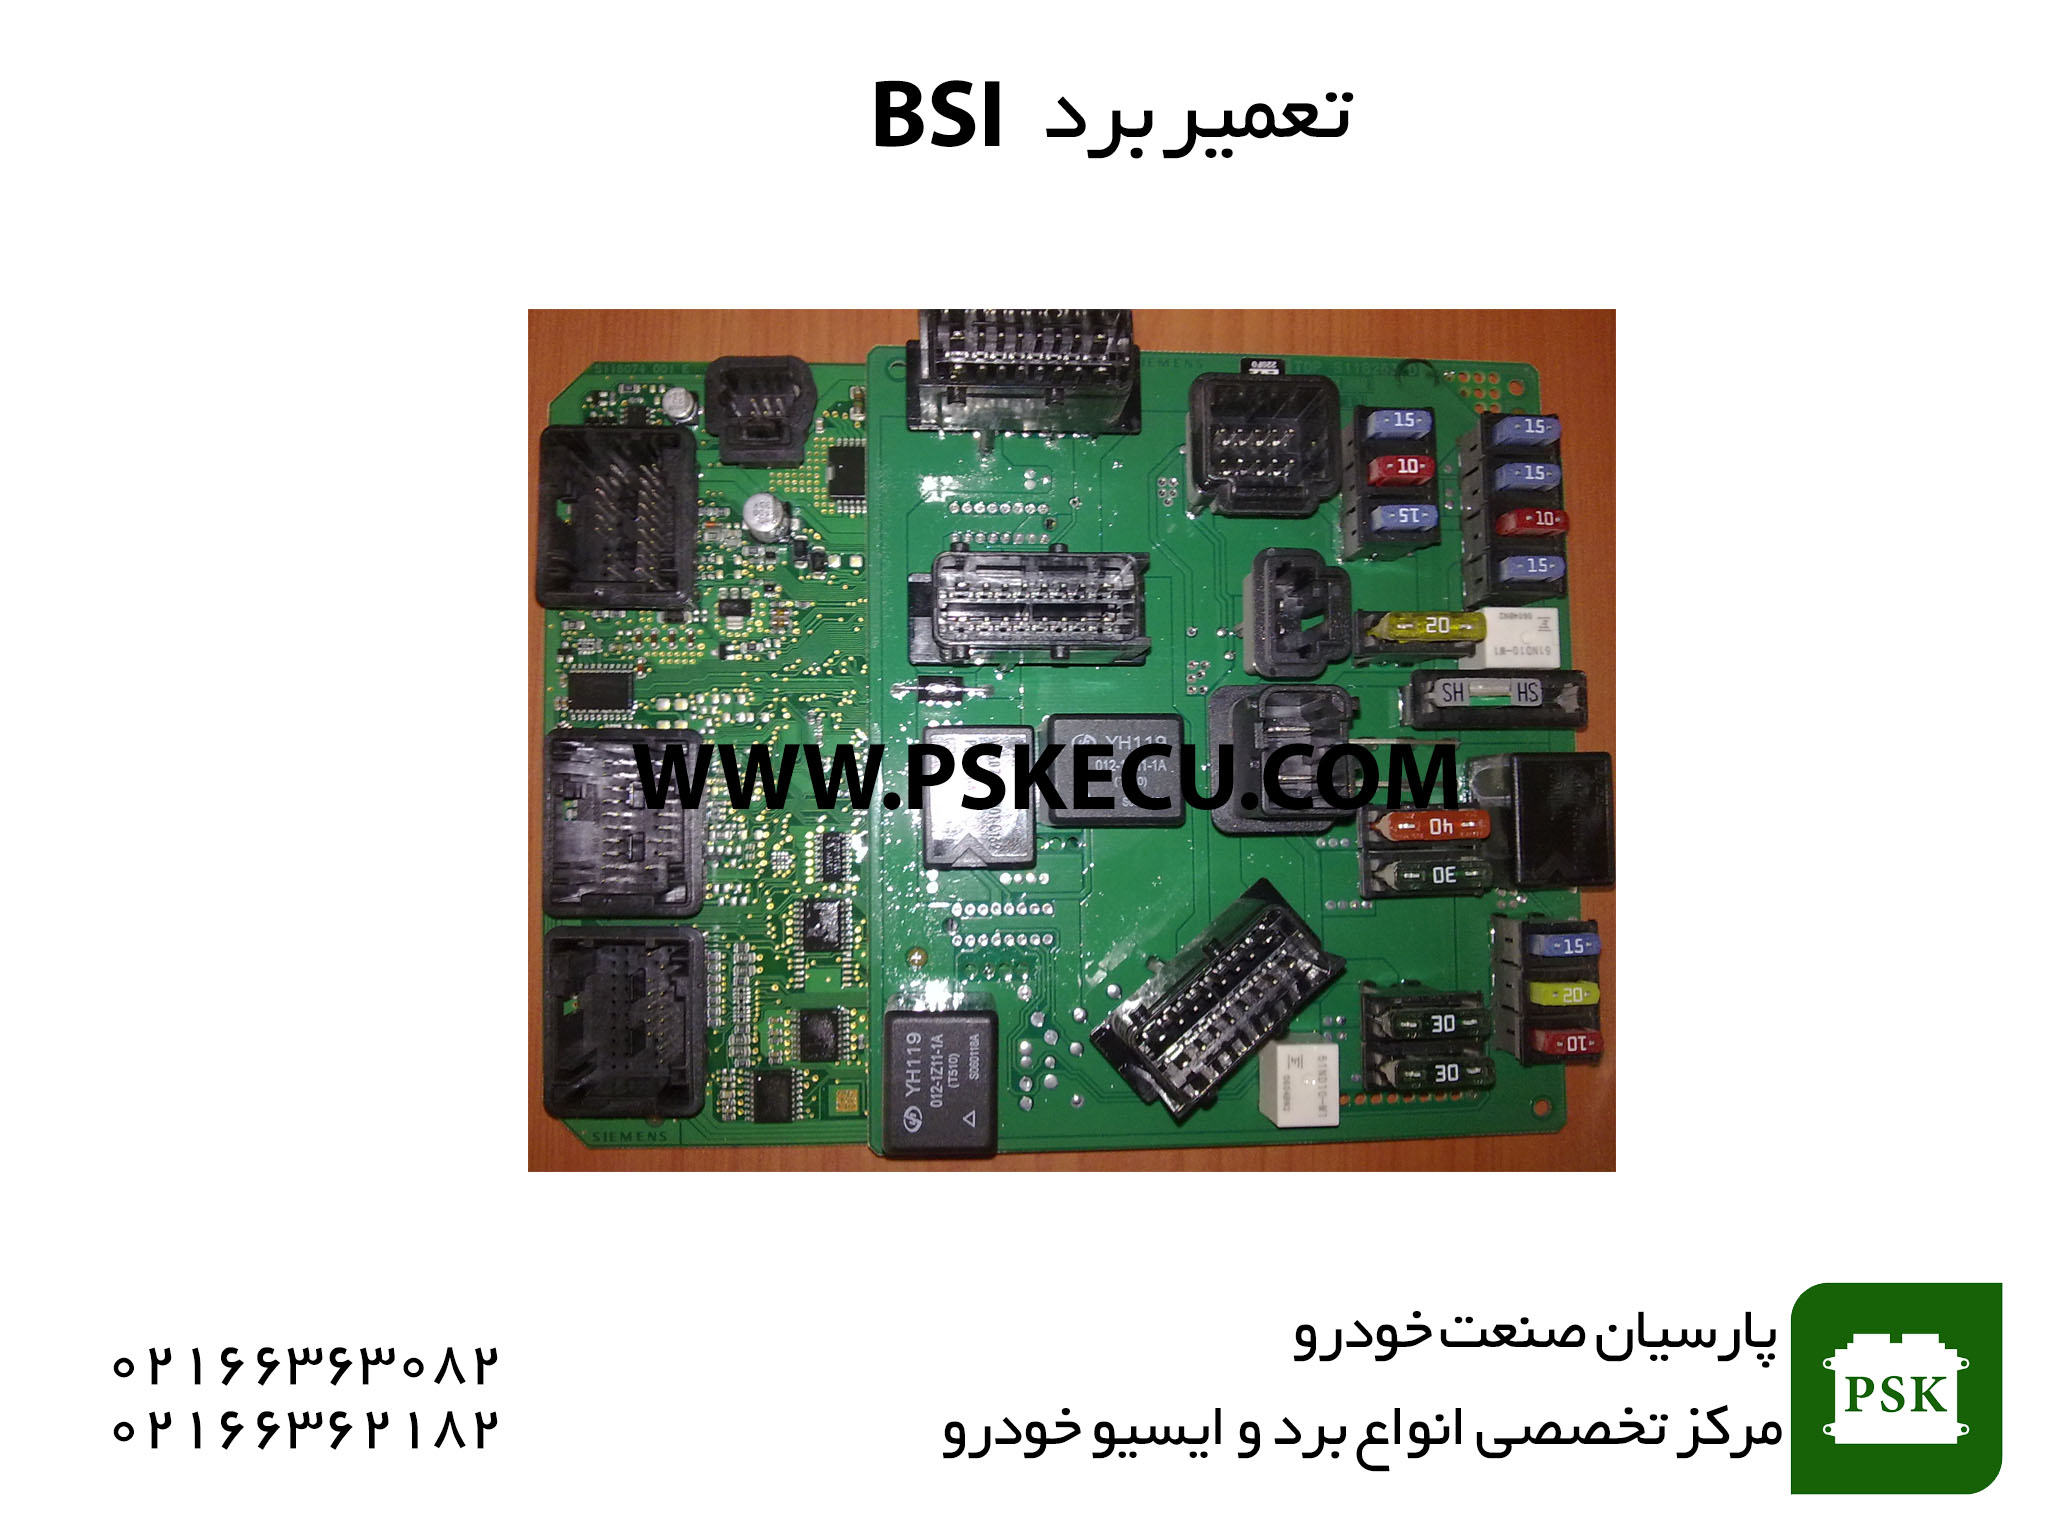 تعمیر برد BSI - تعمیر یونیت BSI - تعمیر برد الکترونیکی BSI